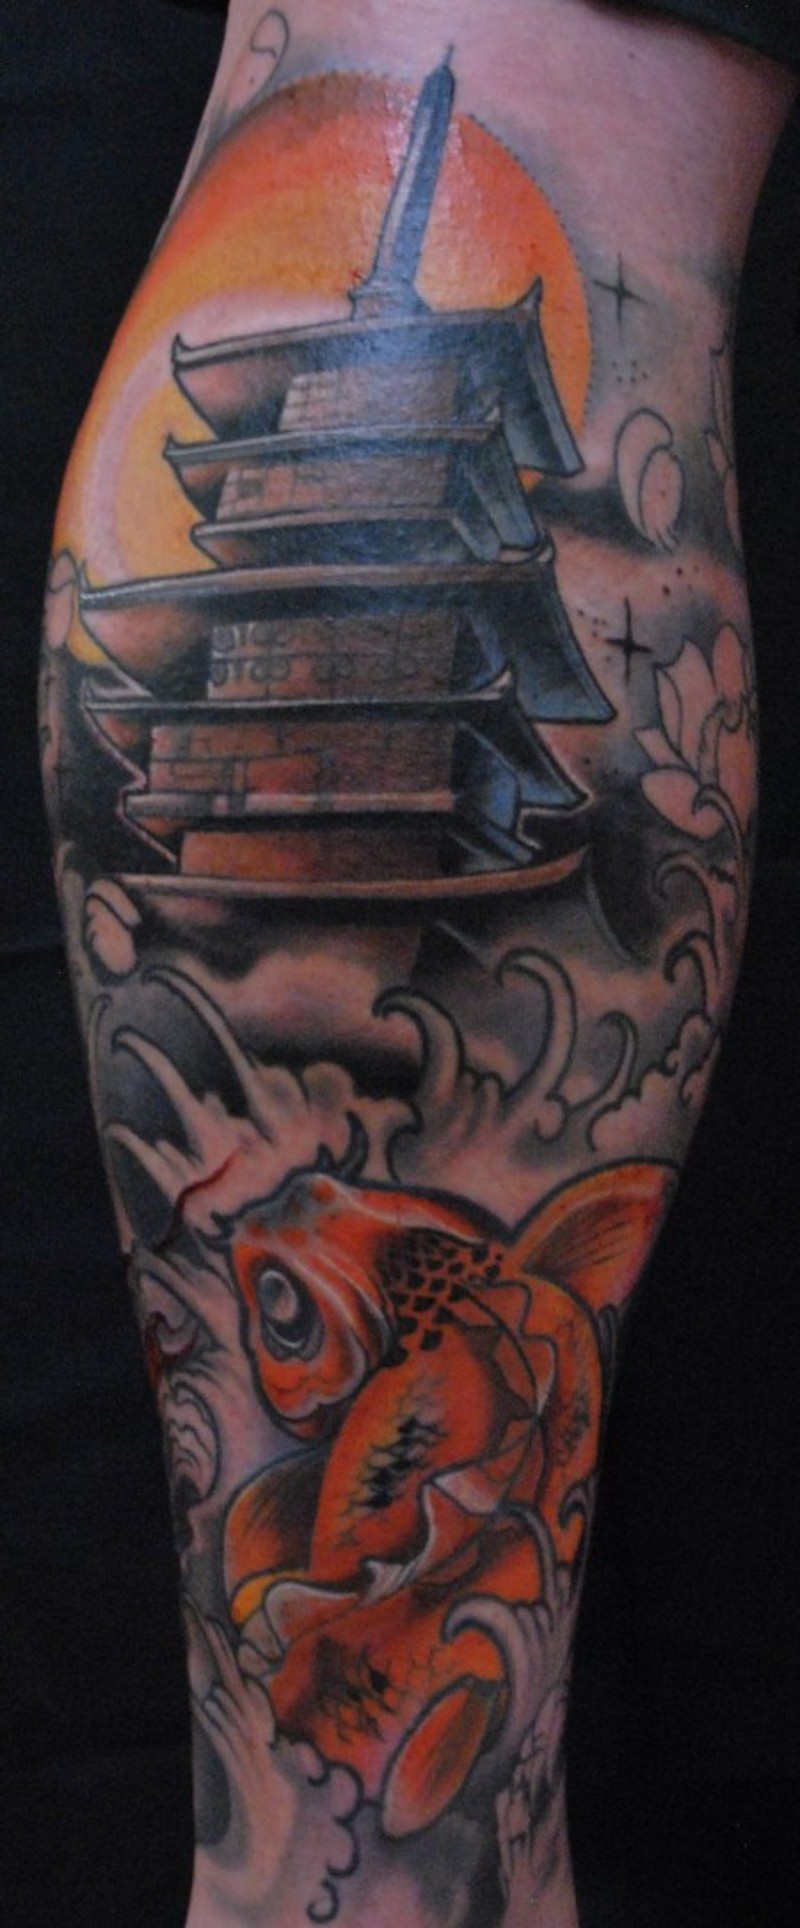 小腿漫画风格彩色的寺庙与鲤鱼纹身图案